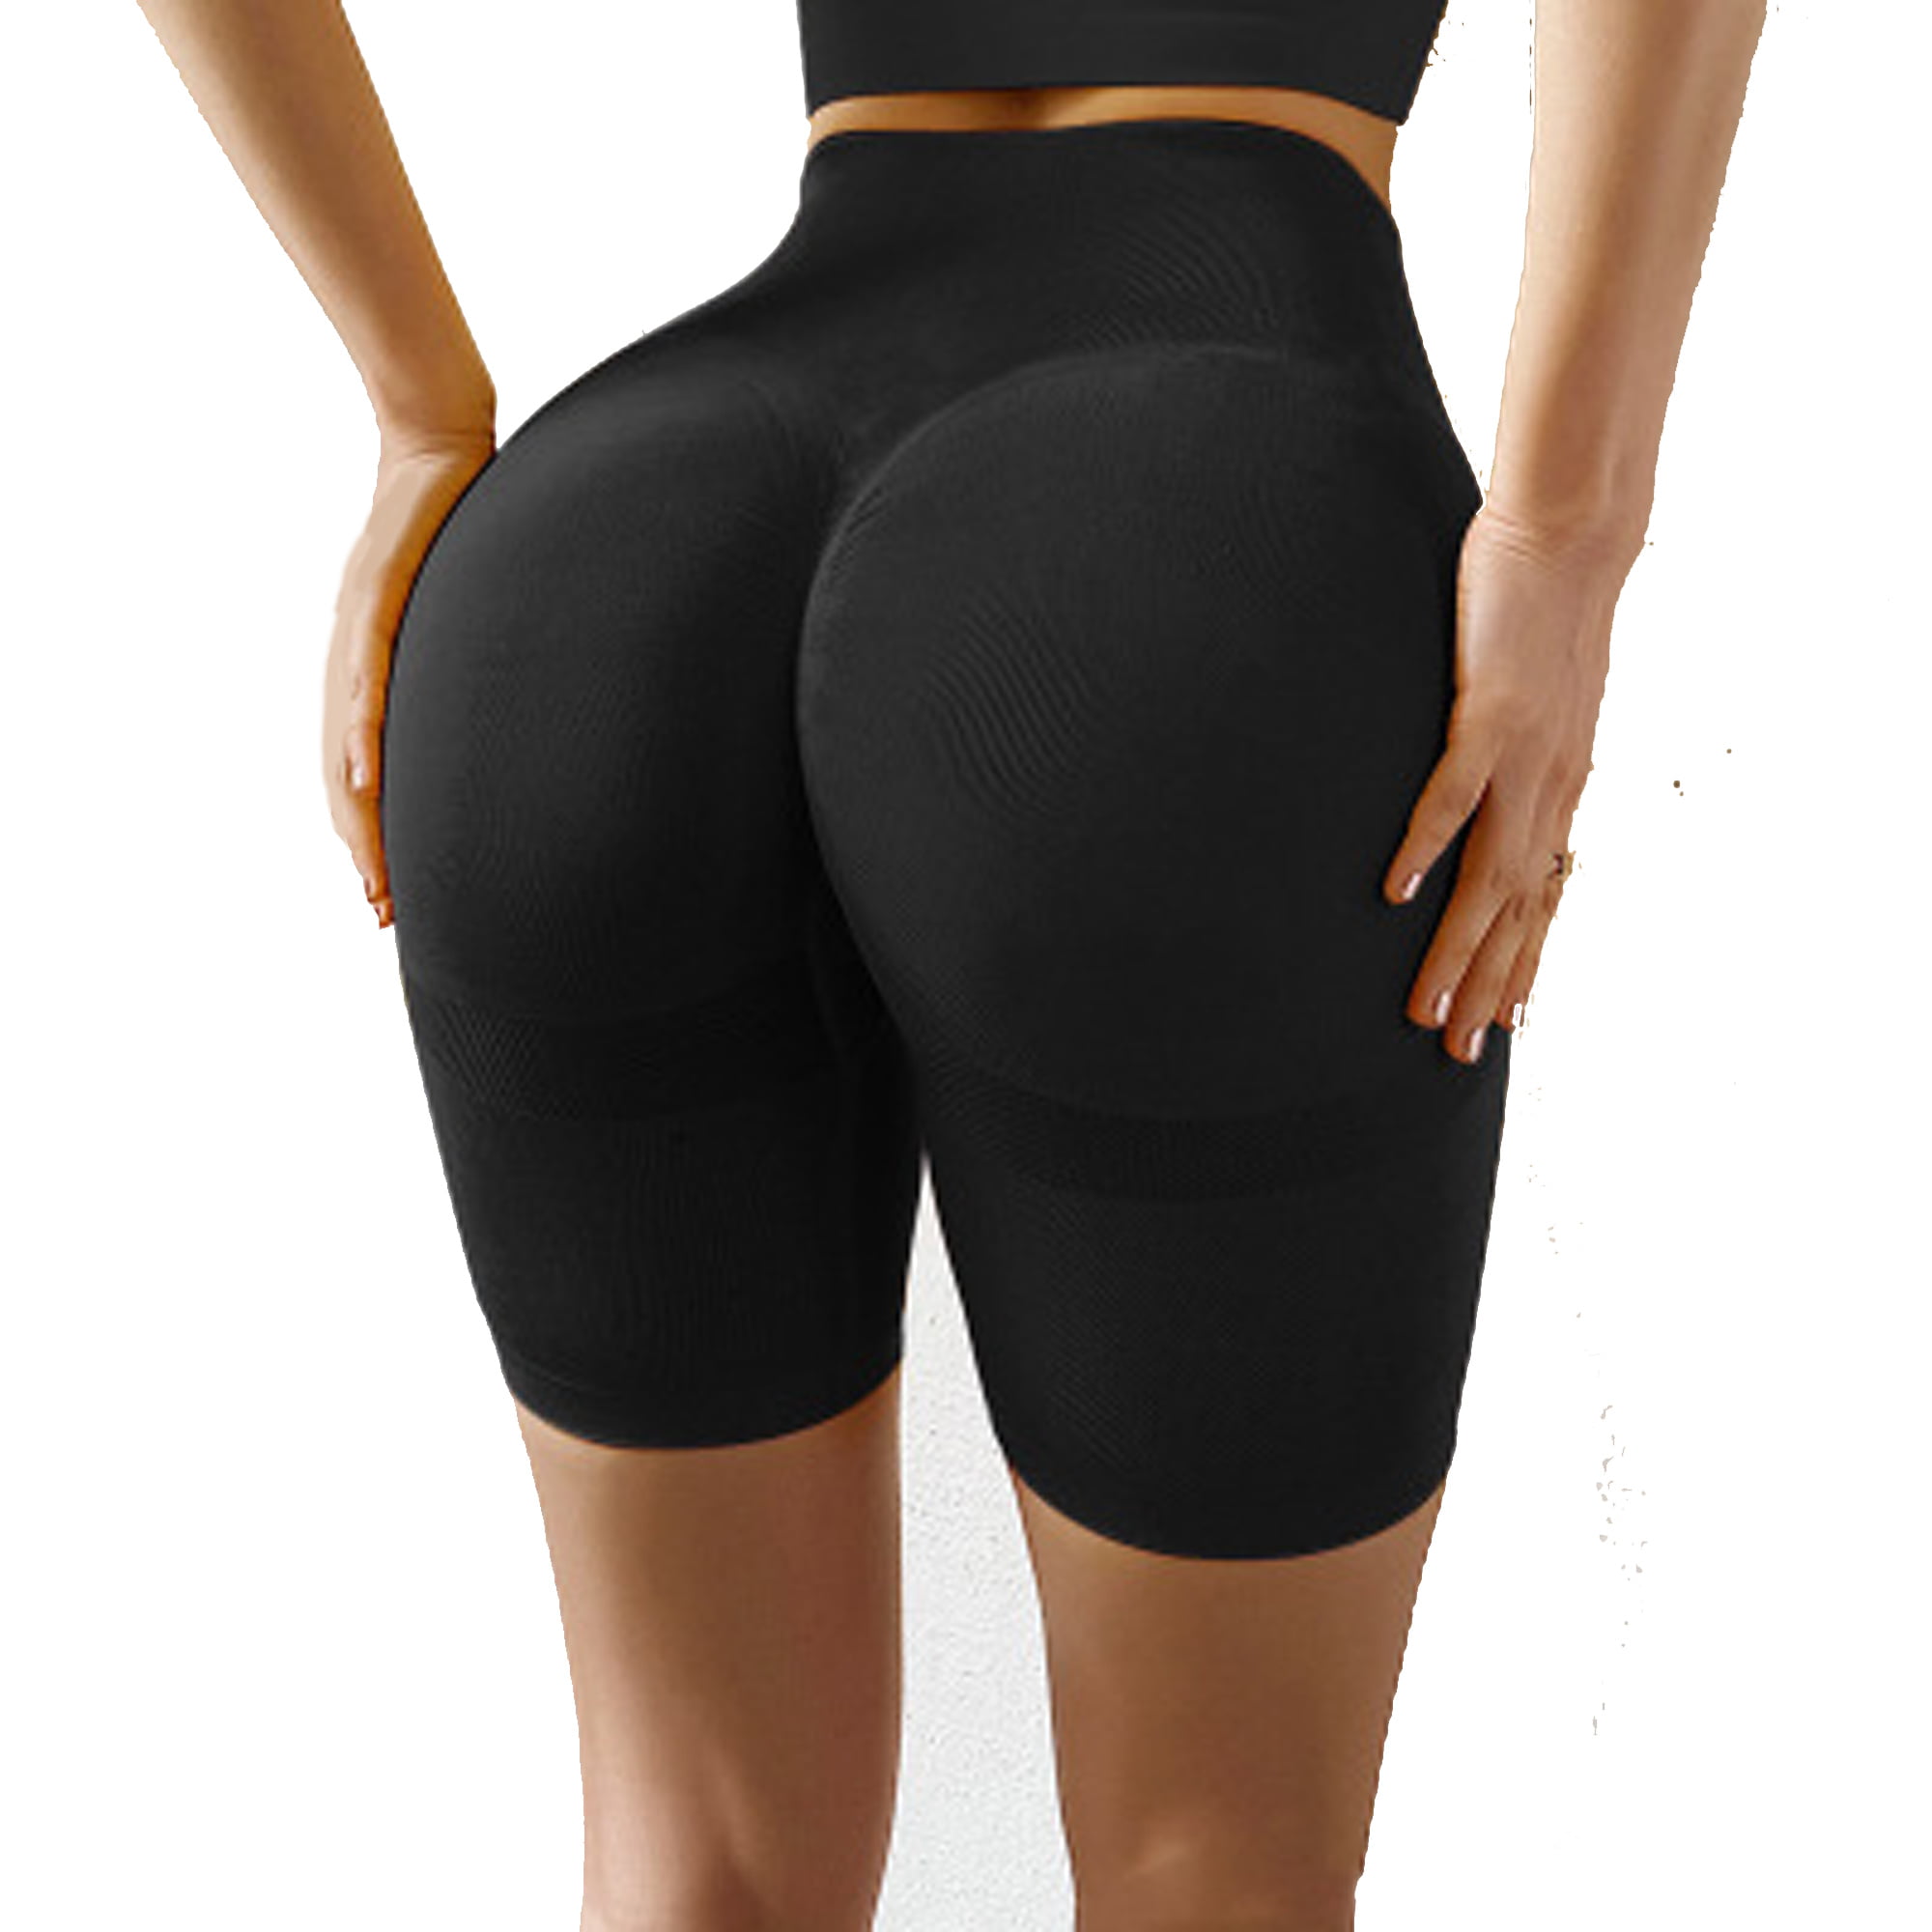 Αγορά Γυναικεία ένδυση  Merlvida Women's Scrunch Butt Sports Shorts  Seamless Gym Leggings High Waist Shorts Push Up Sports Trousers Opaque  Cycling Shorts for Biker Yoga Fitness Workout